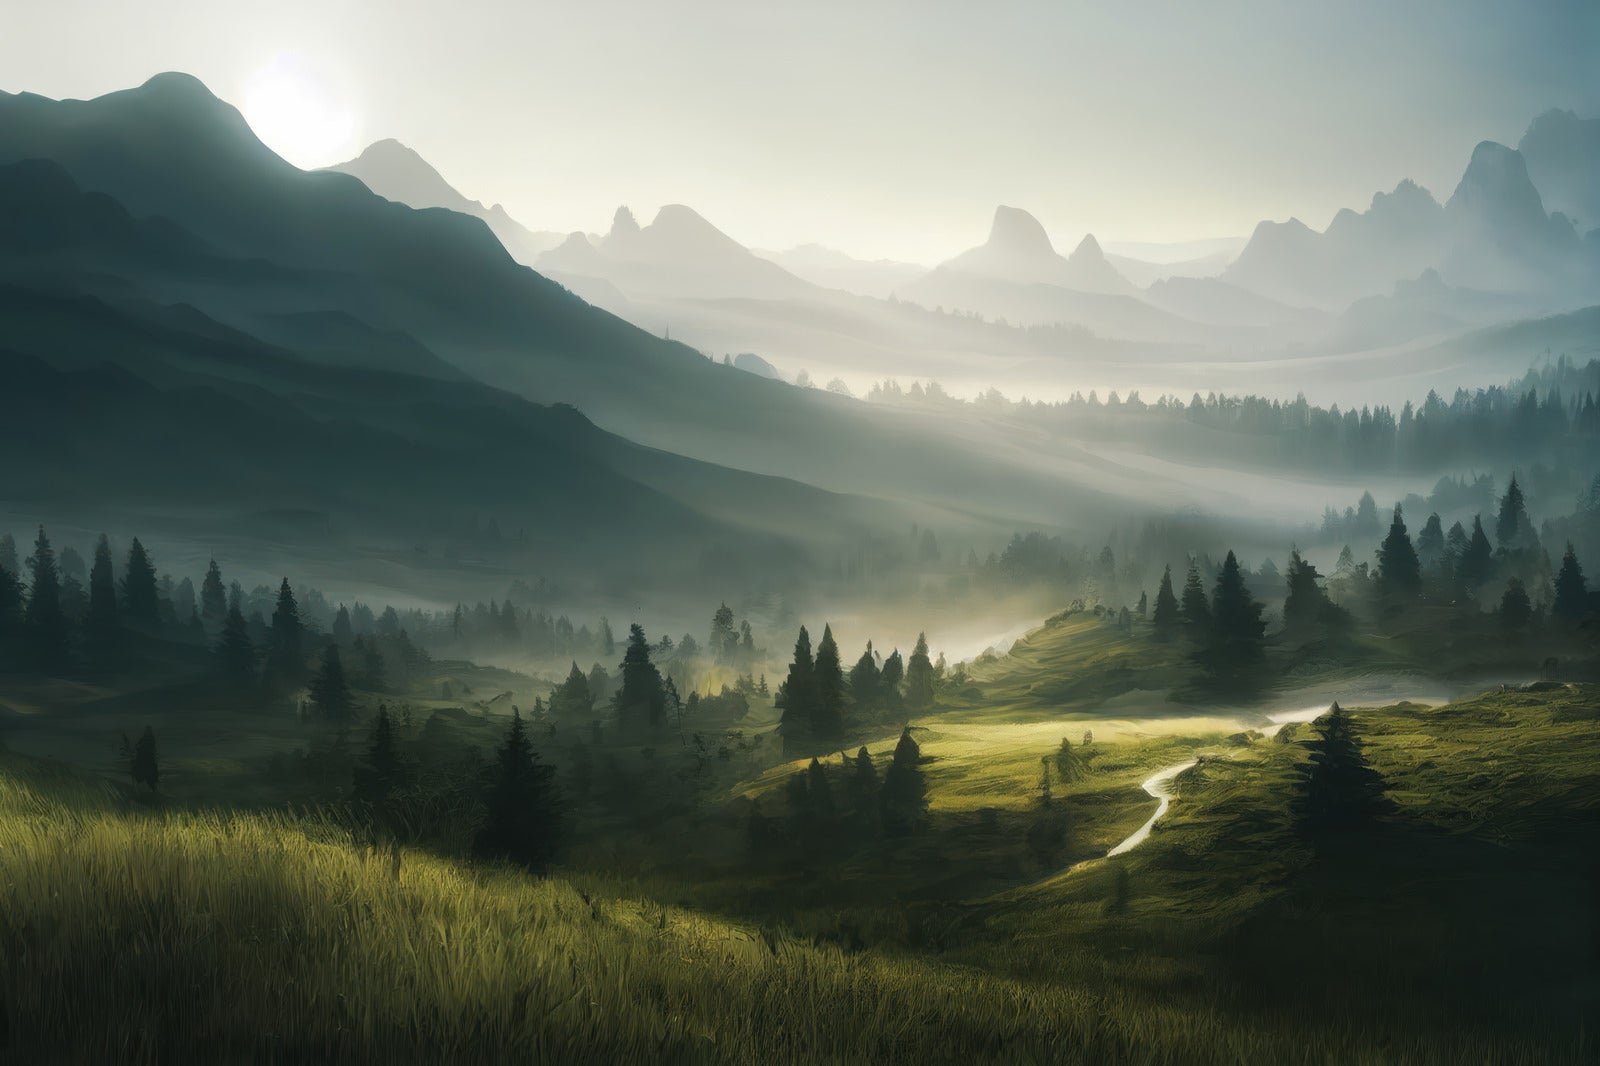 「山と森と丘と自然豊かな景観」の写真